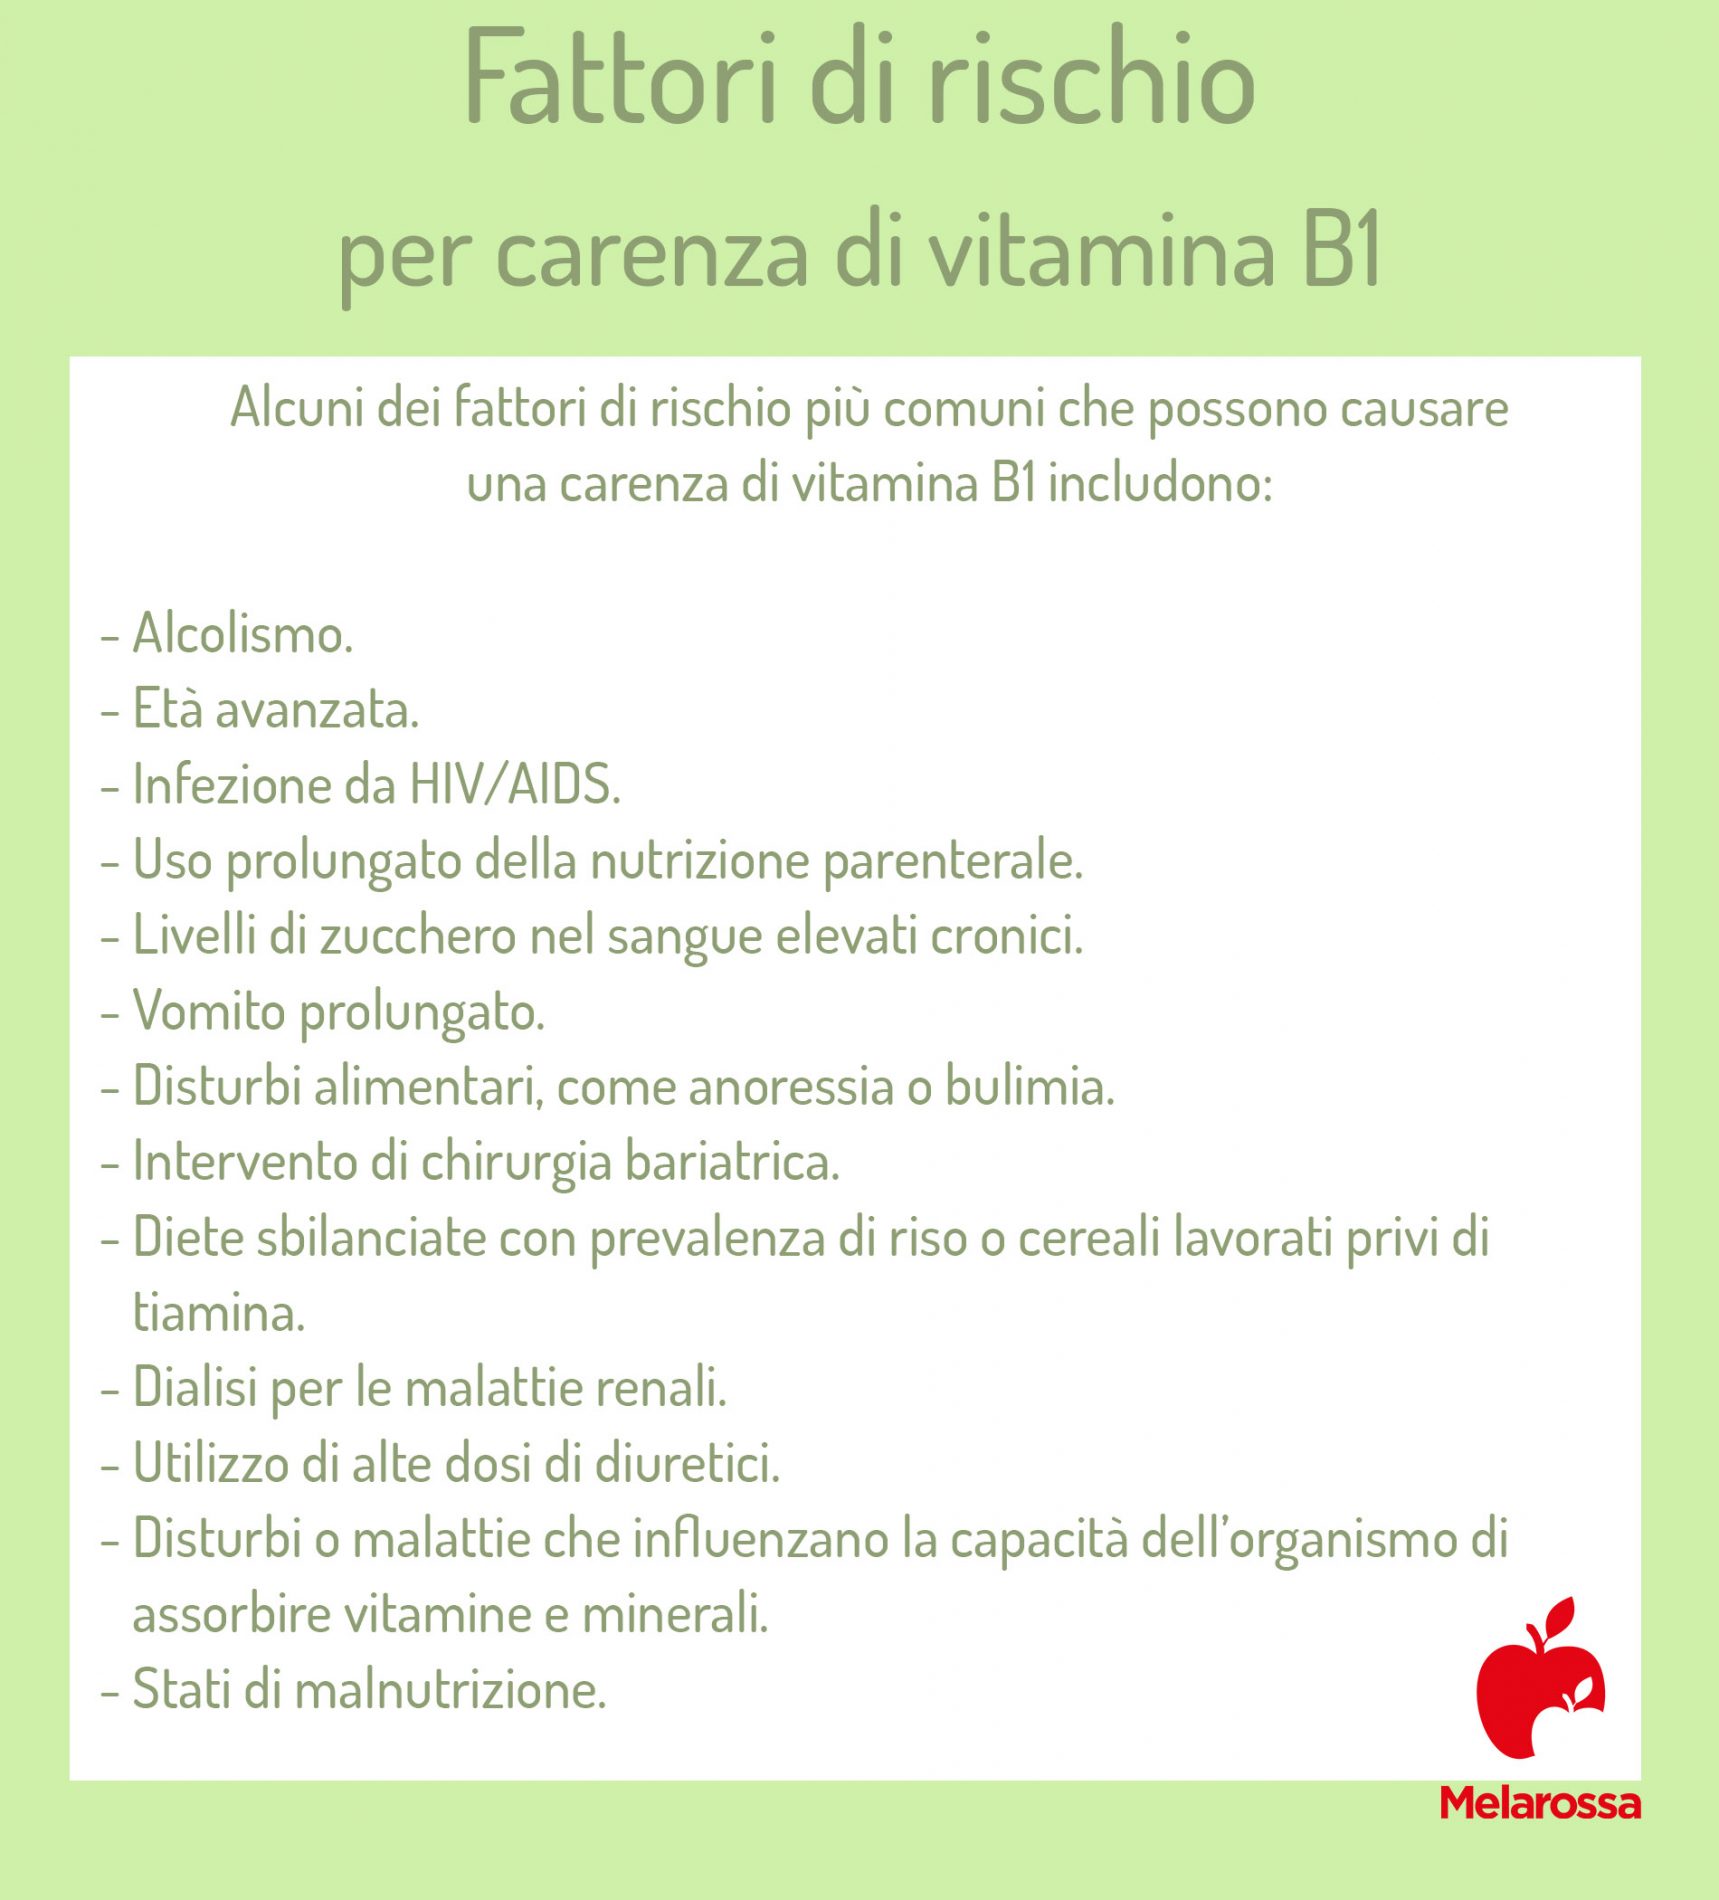 fattori di rischio di una carenza di vitamina B1